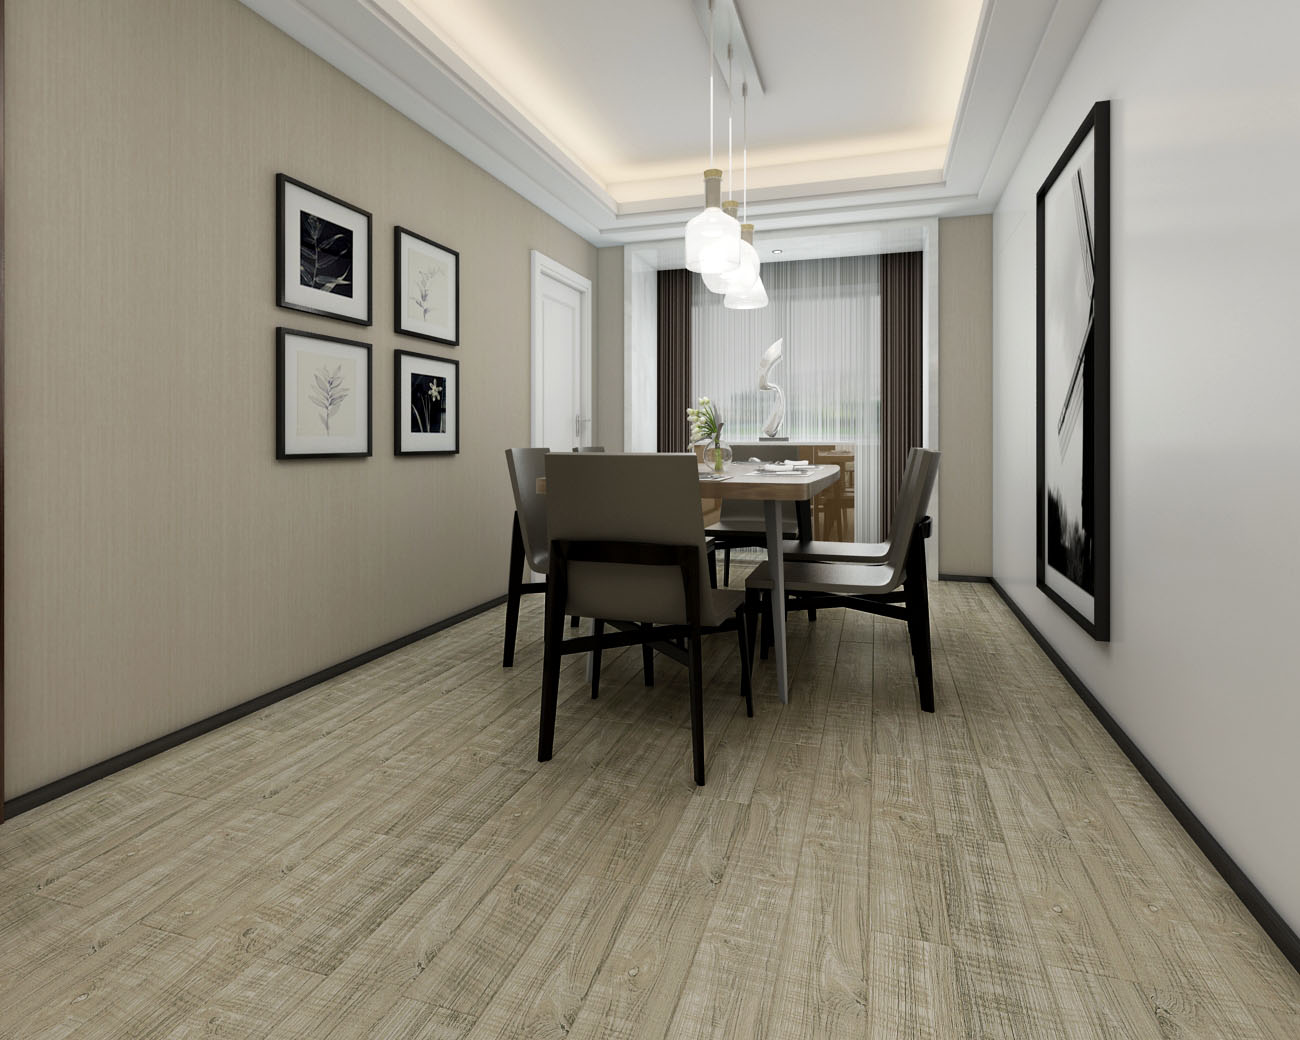 宜家简约欧式强化复合木地板 防水高耐磨家用环保米白色强化地板